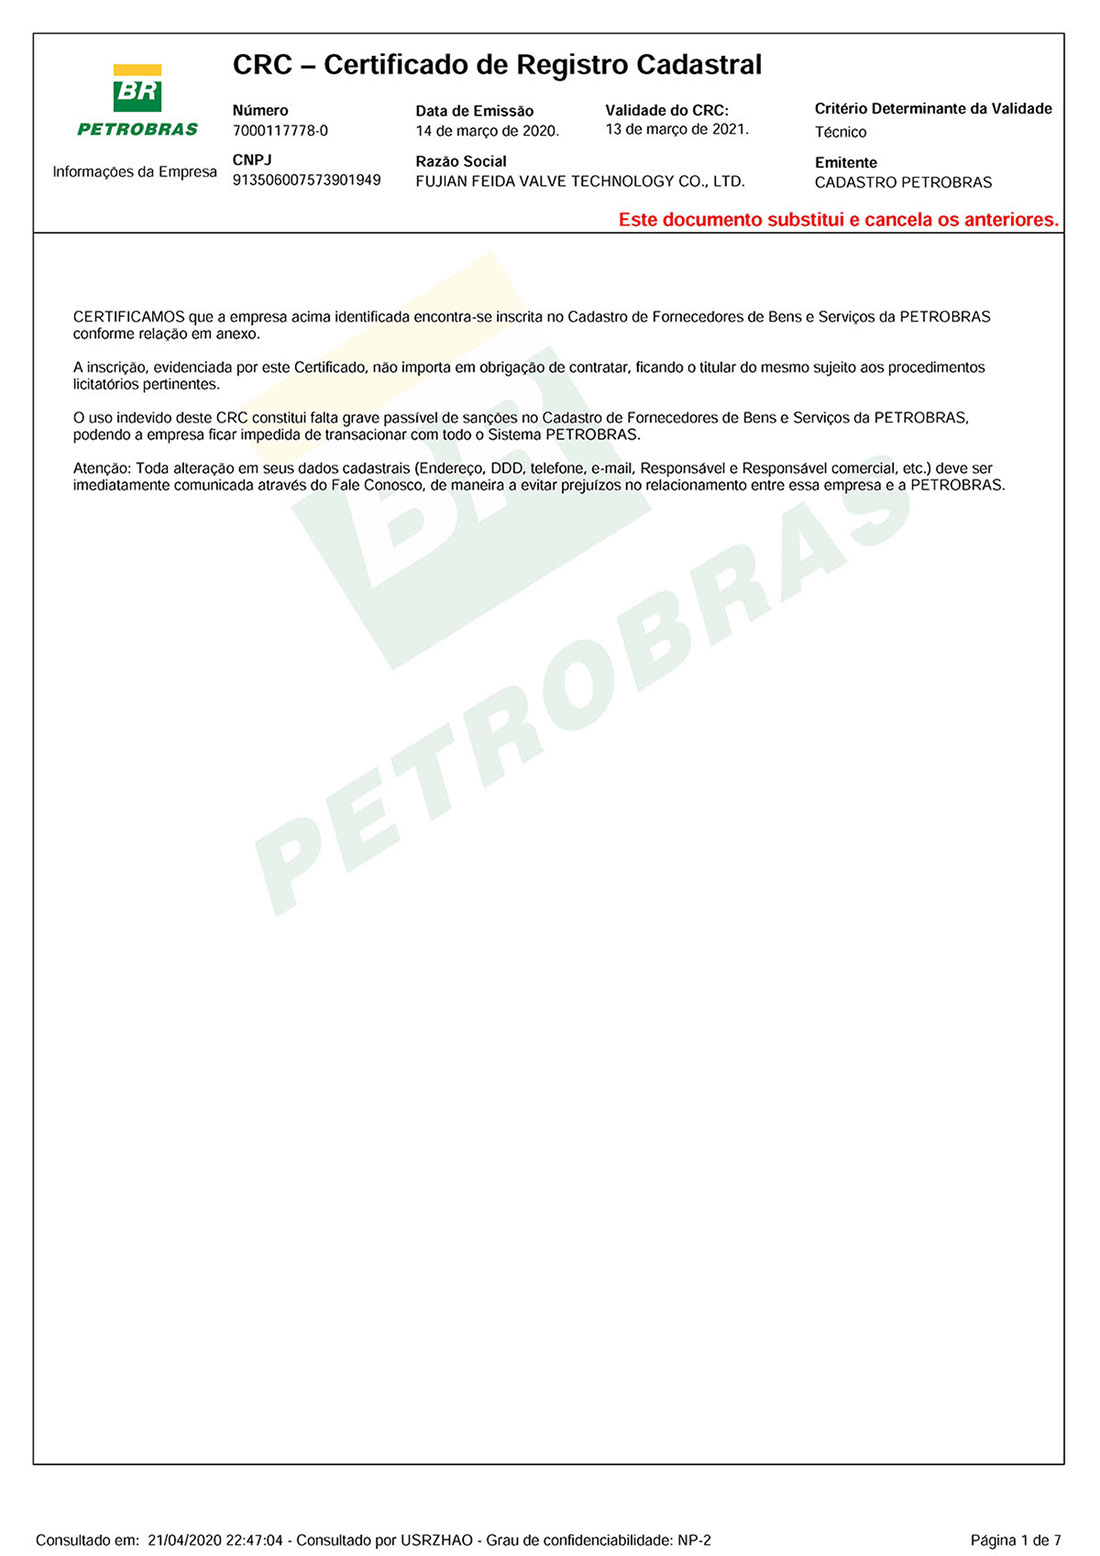 PETROBRAS CRC CERTIFICATE UPDATED